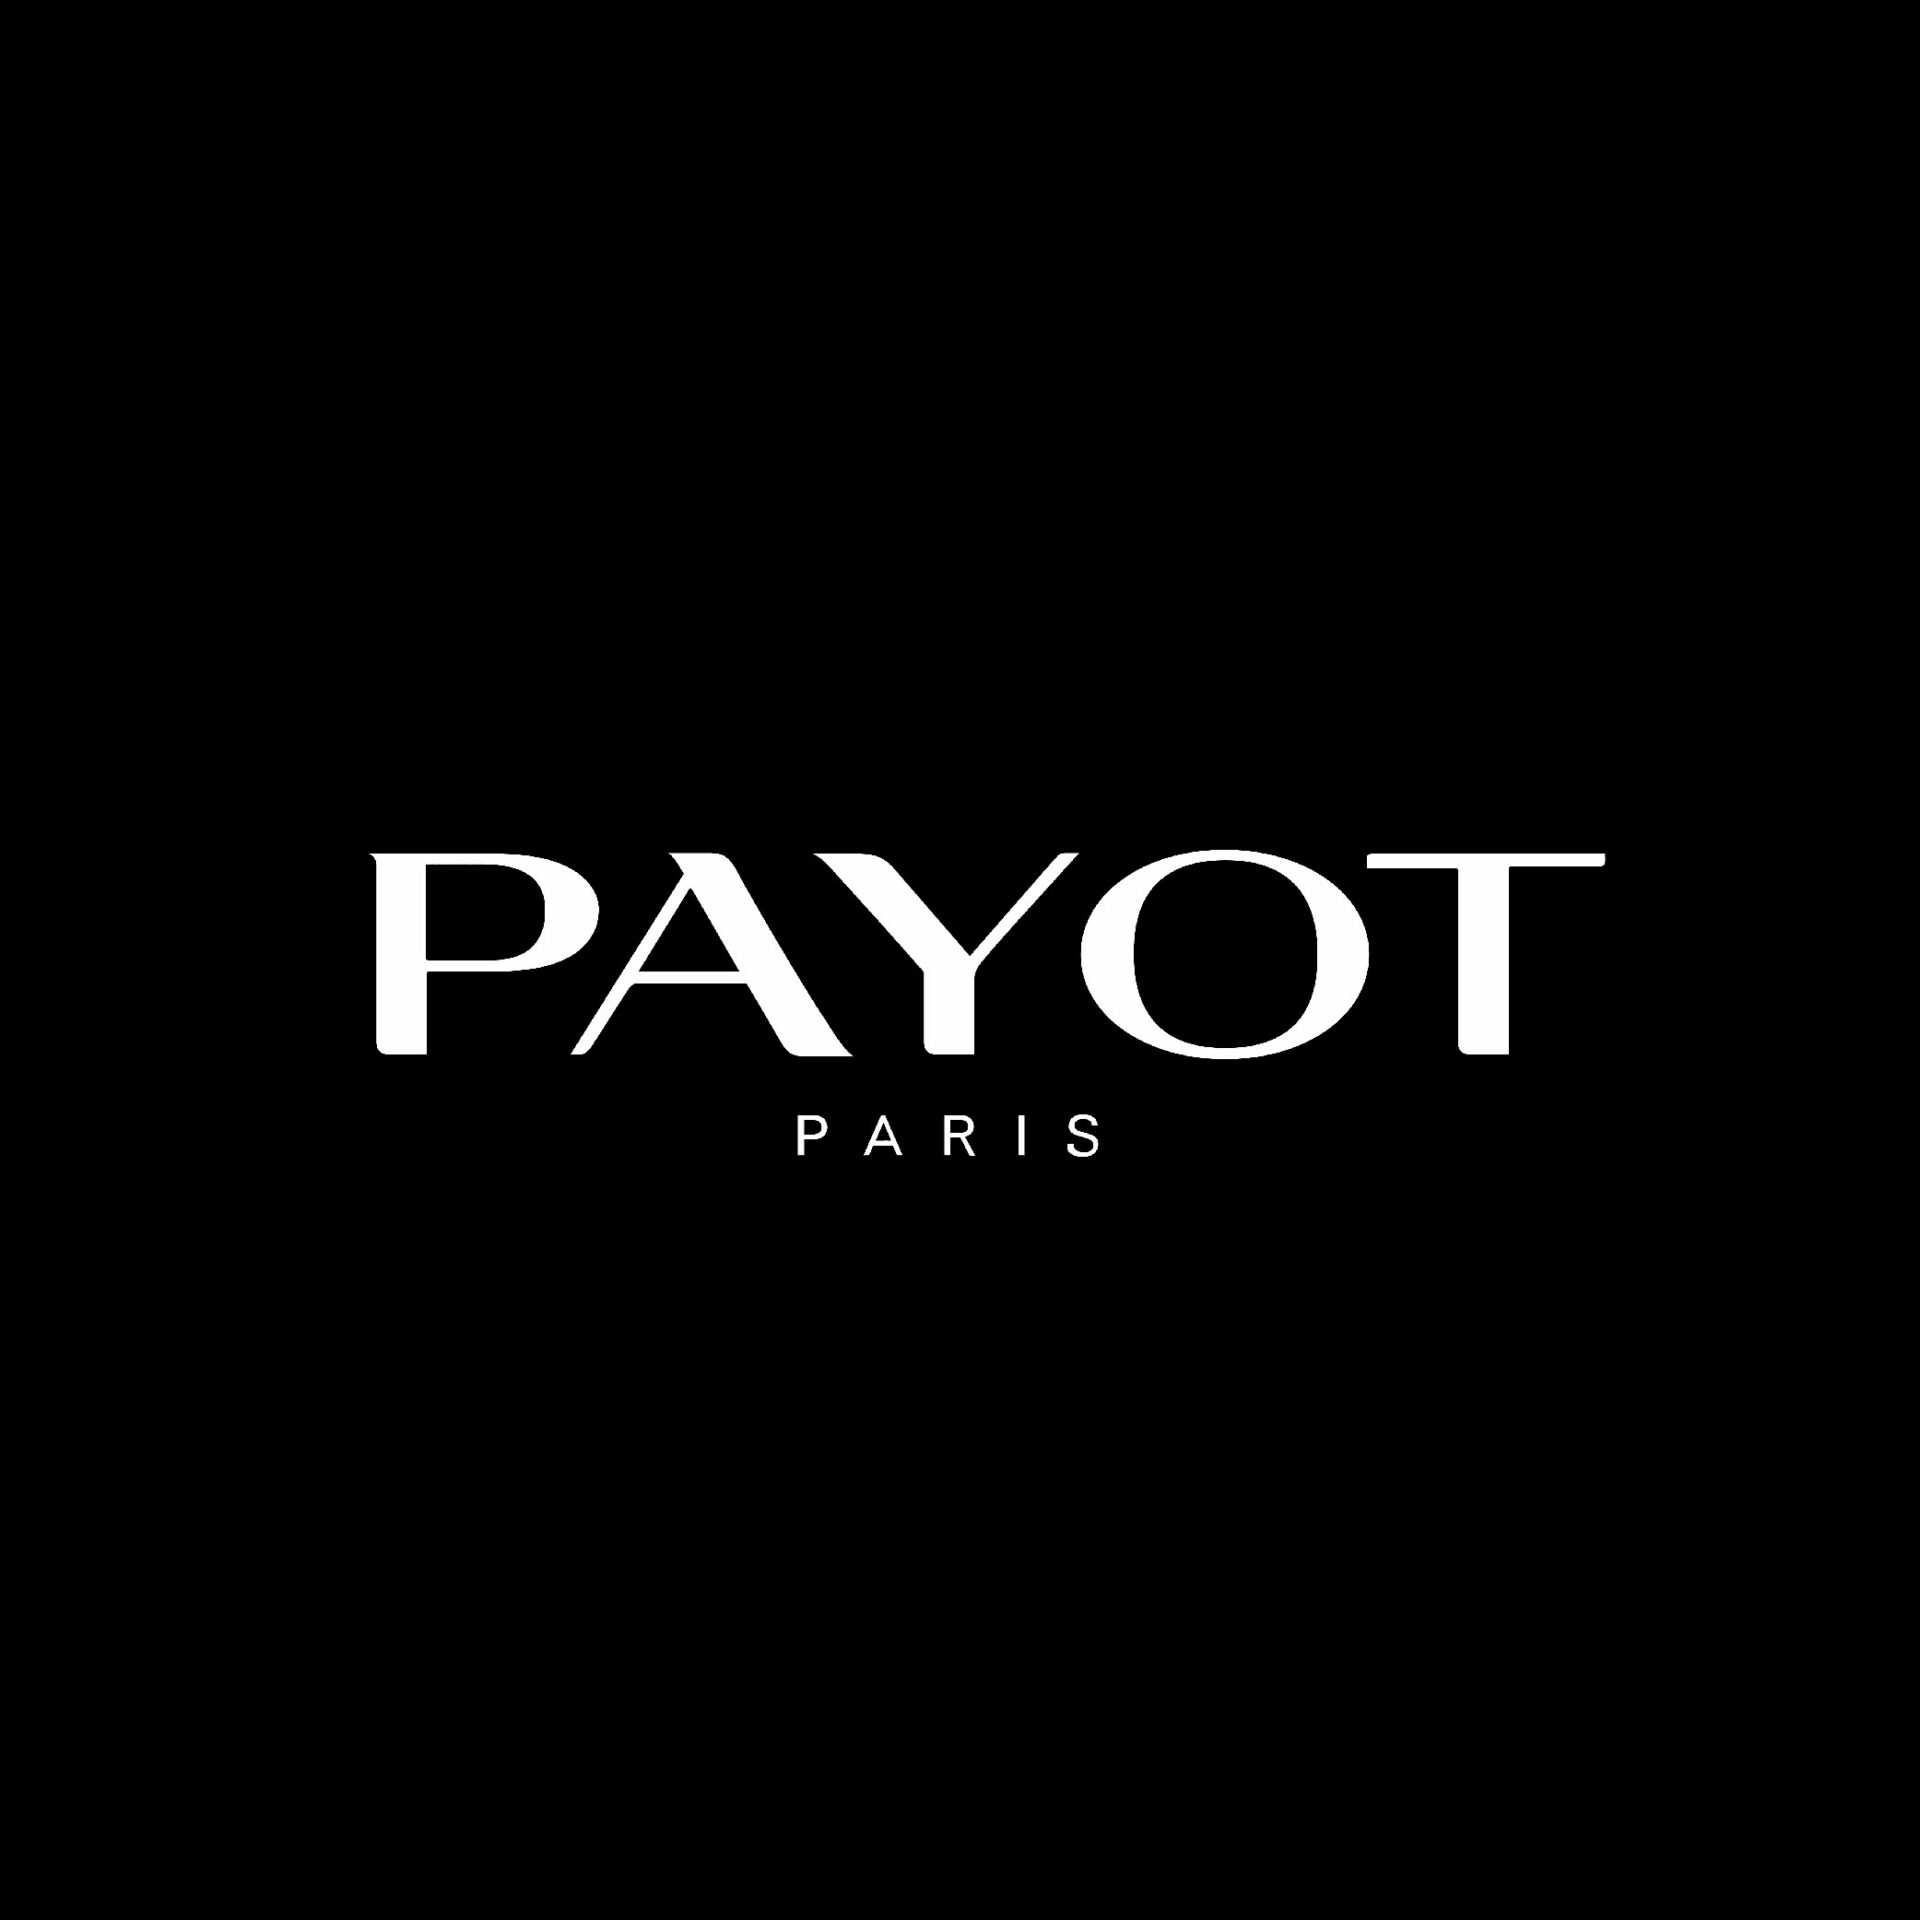 Payot logo 02 scaled